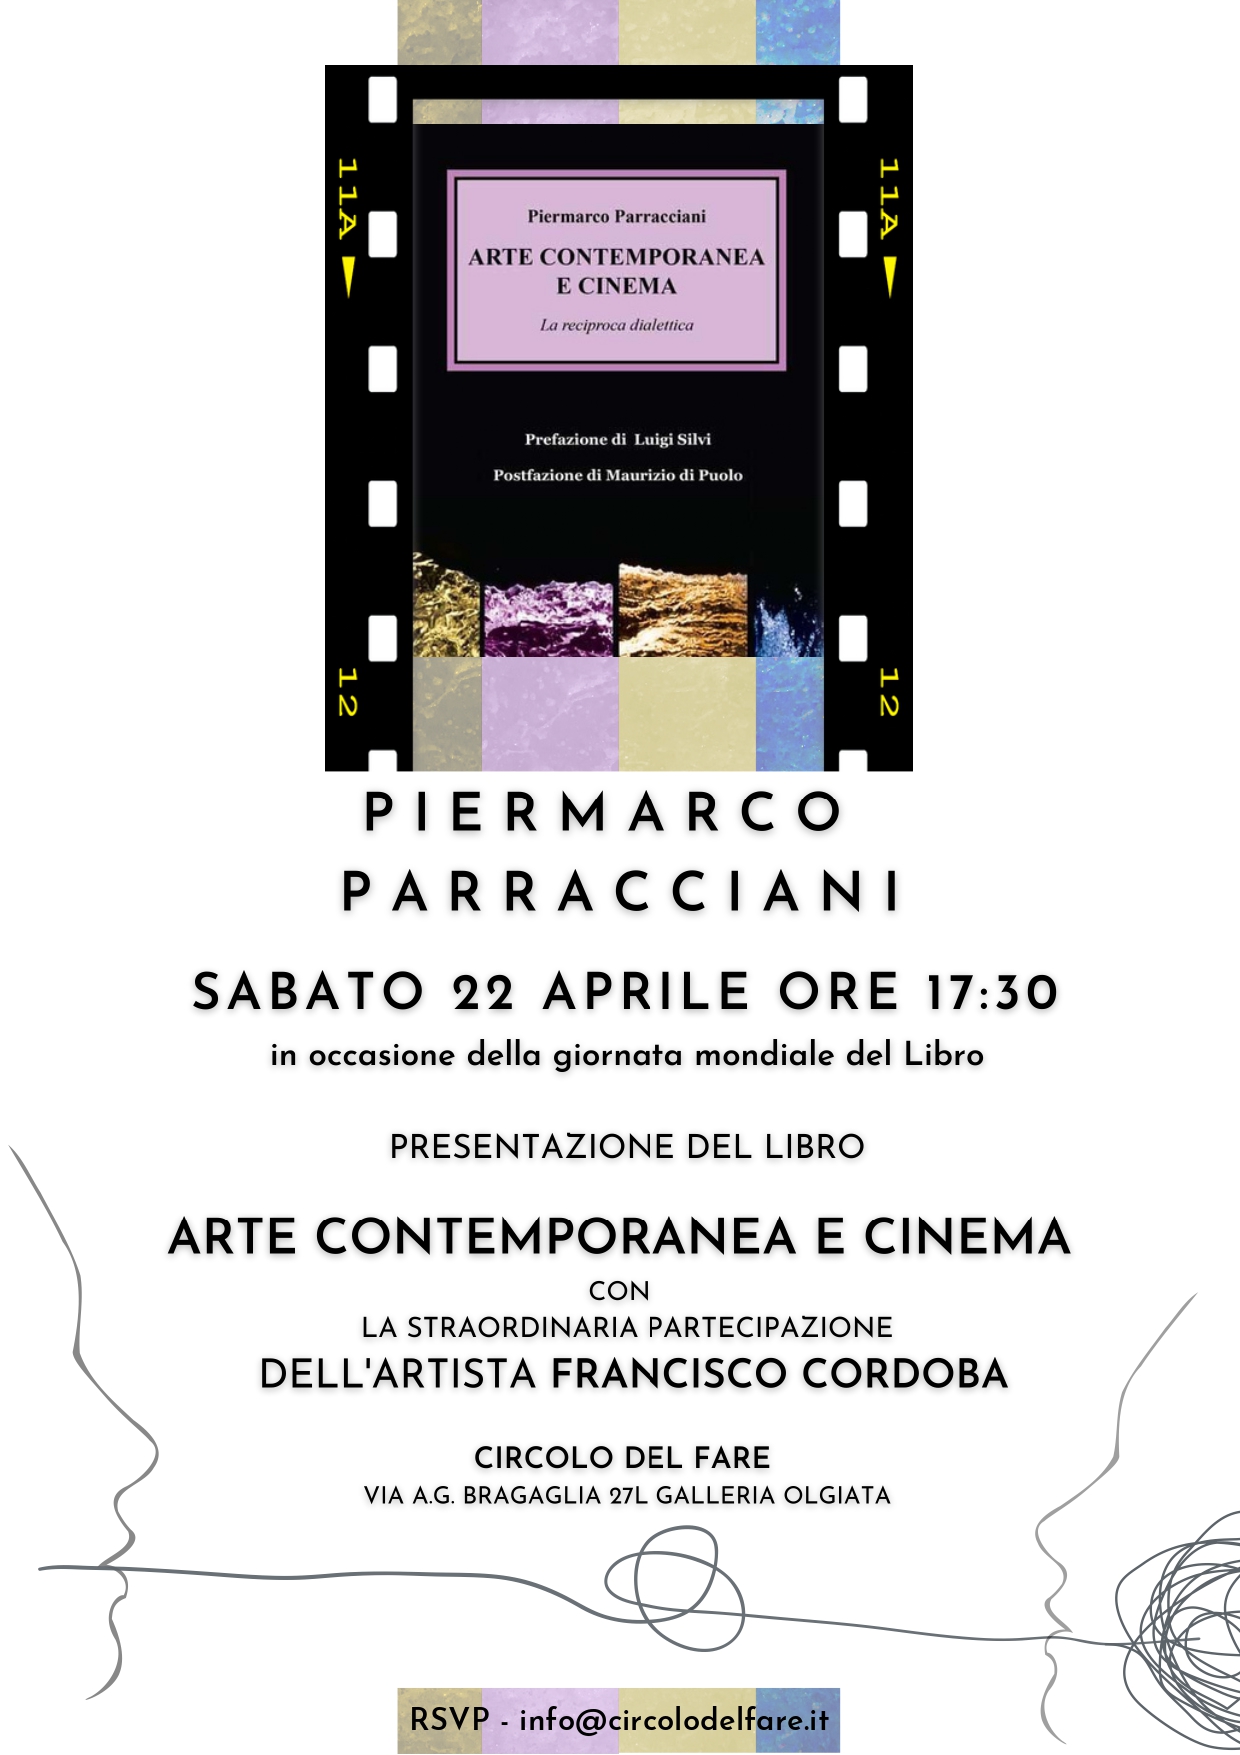 Presentazione del libro "Arte Contemporanea e Cinema" di Piermarco Parracciani